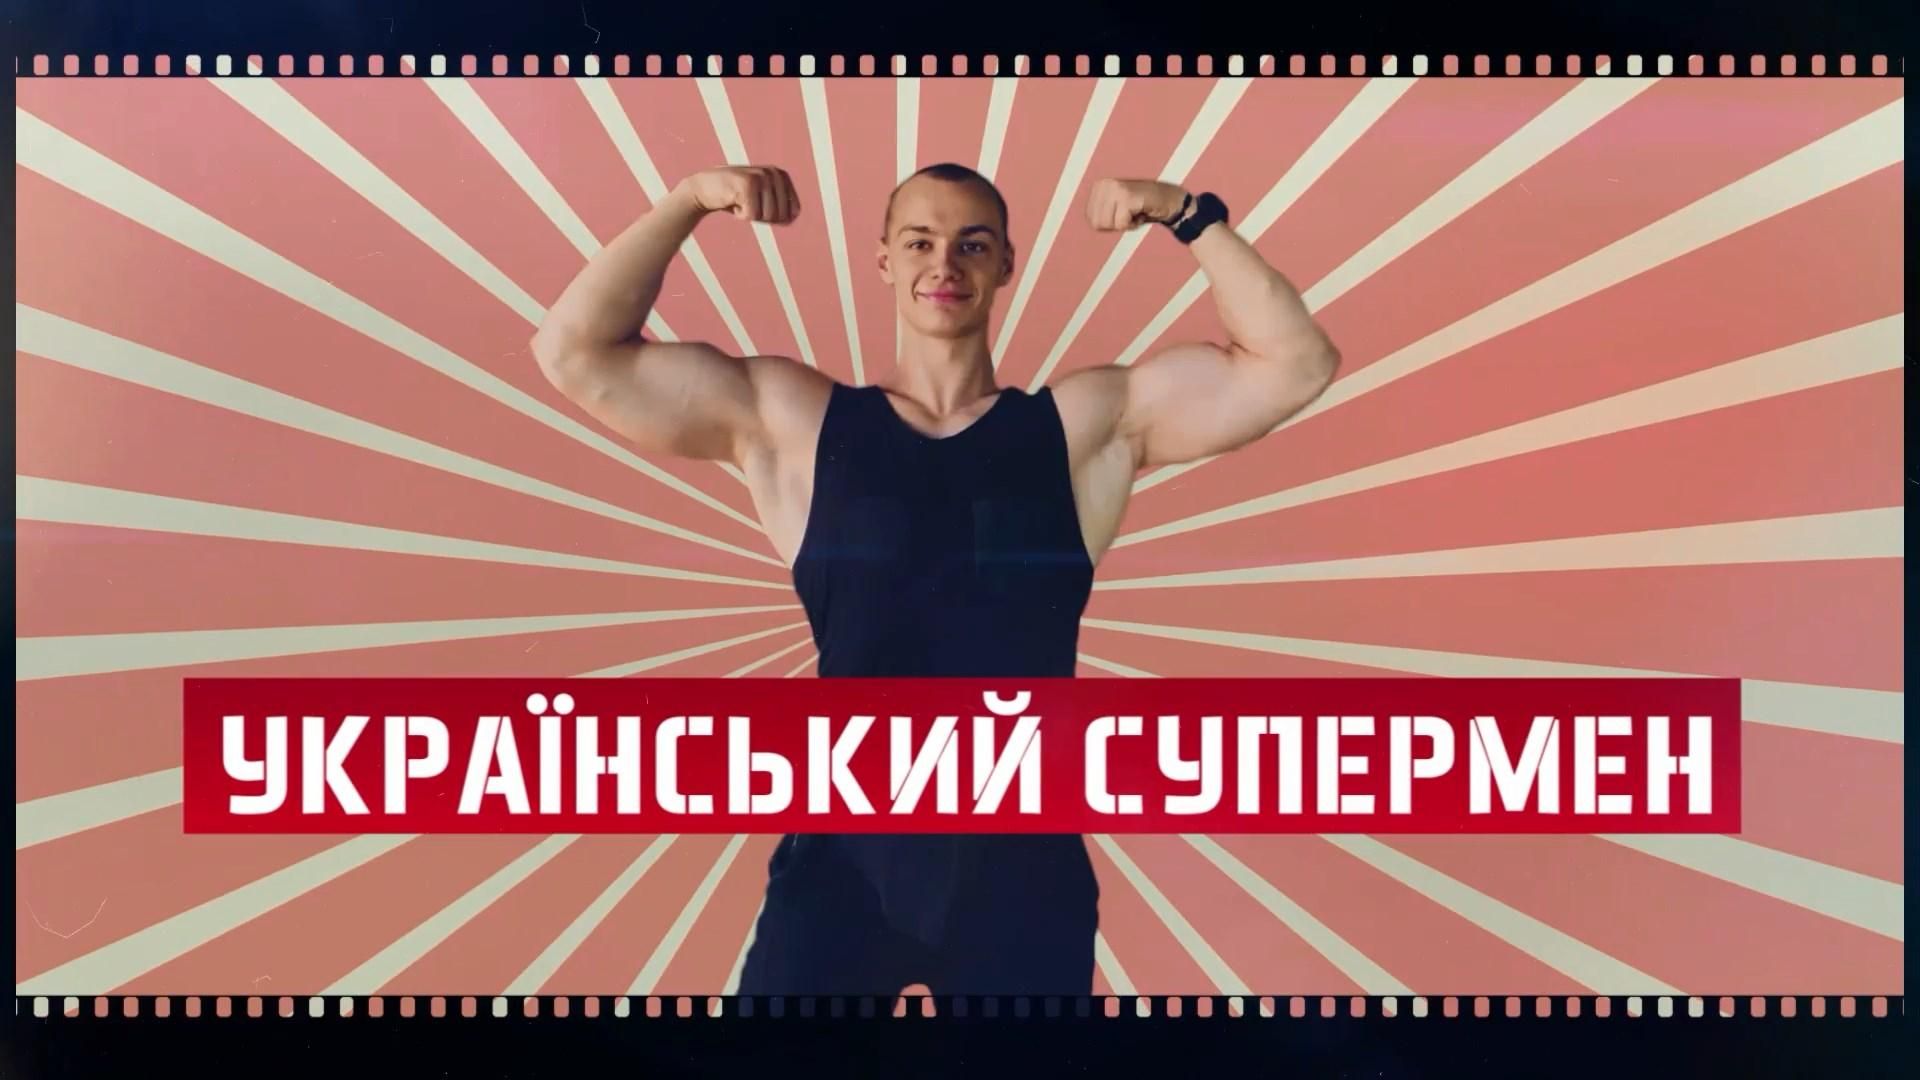 Сенсация в мире фитнеса: невероятные сальто от украинского спортсмена